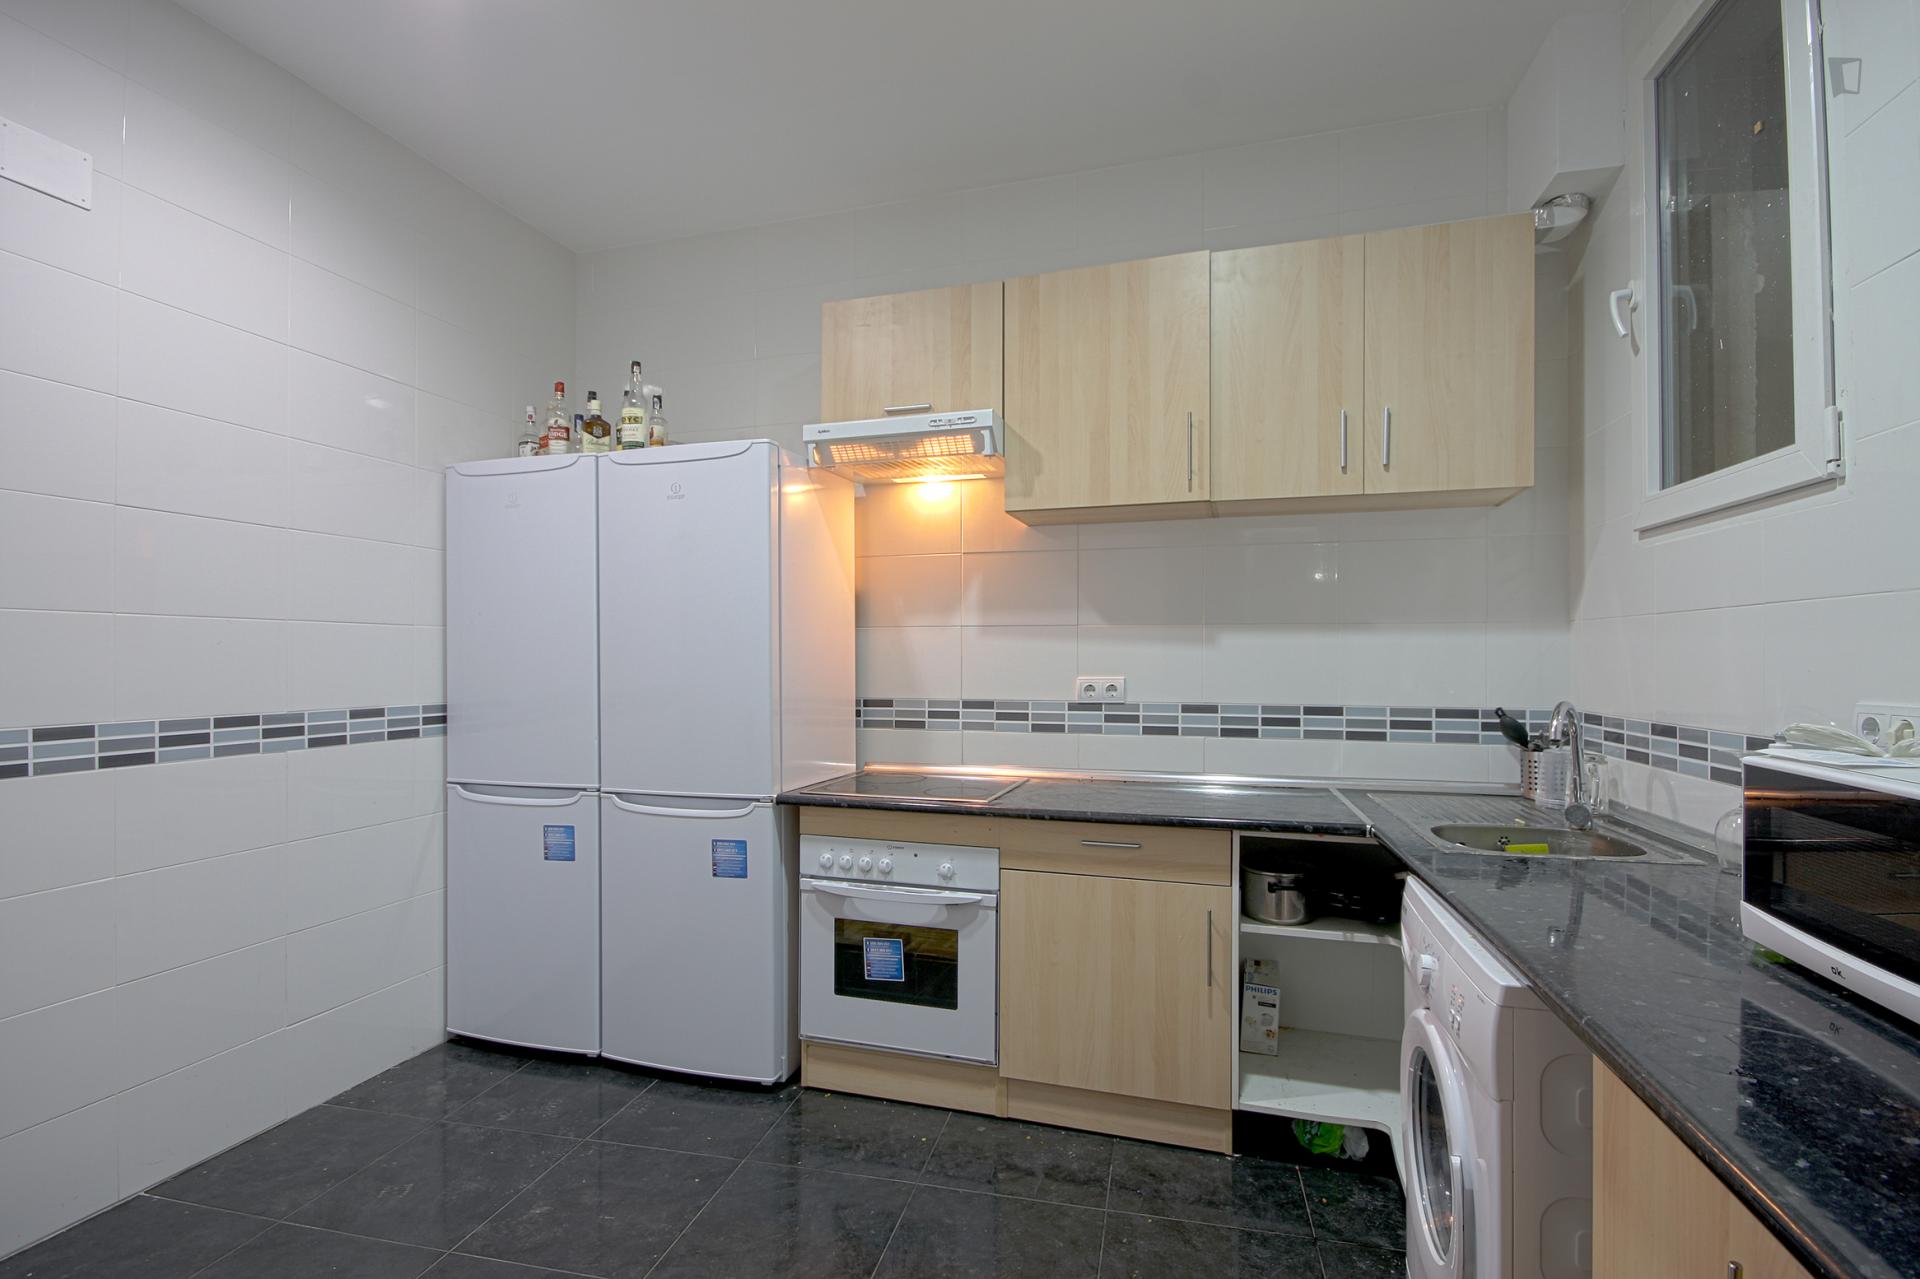 Preciados - Habitación doble en piso compartido Madrid